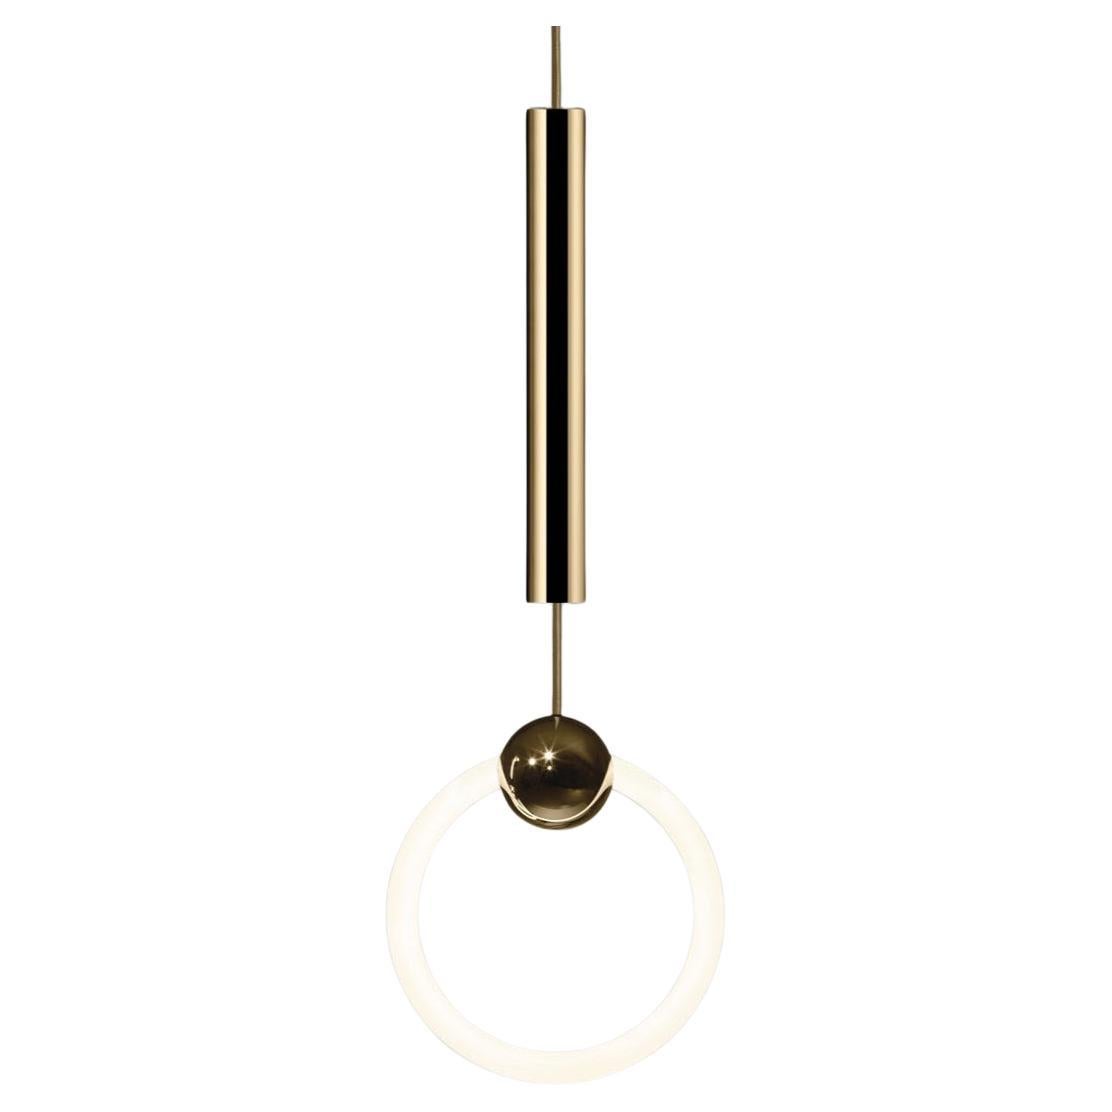 Die ikonische Ringleuchte von Lee Broom wird als brandneues Voll-LED-Produkt für 2023 neu aufgelegt. Eine polierte Goldkugel, die von einer dimmbaren LED-Röhre durchdrungen wird, bildet den markanten Lichtring. Ein Anhänger von schlichter